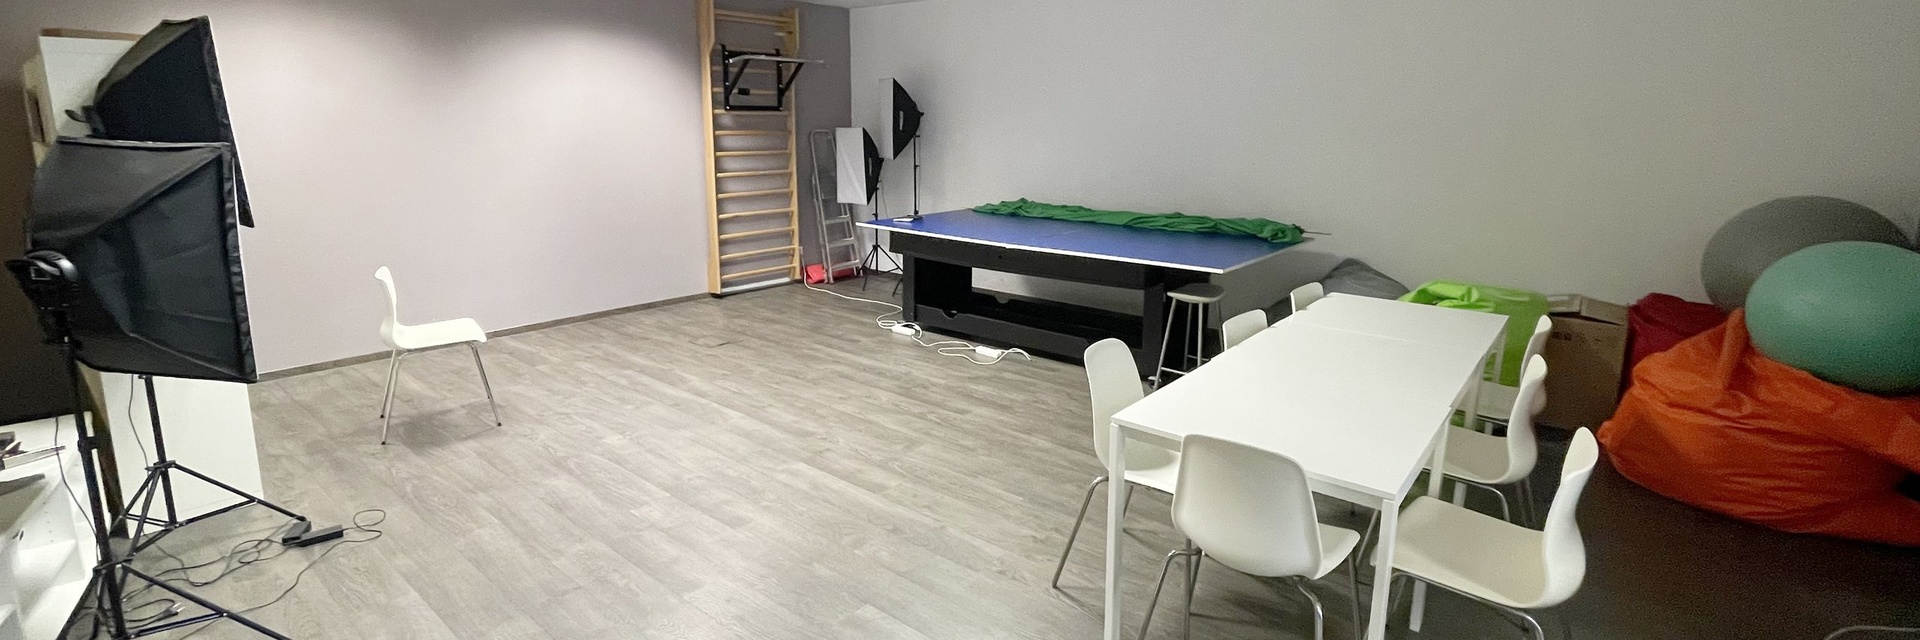 Pronájem hotových kancelářských prostor vč. dispozice 430 m² - 3.NP, ulice Nové Sady, Brno